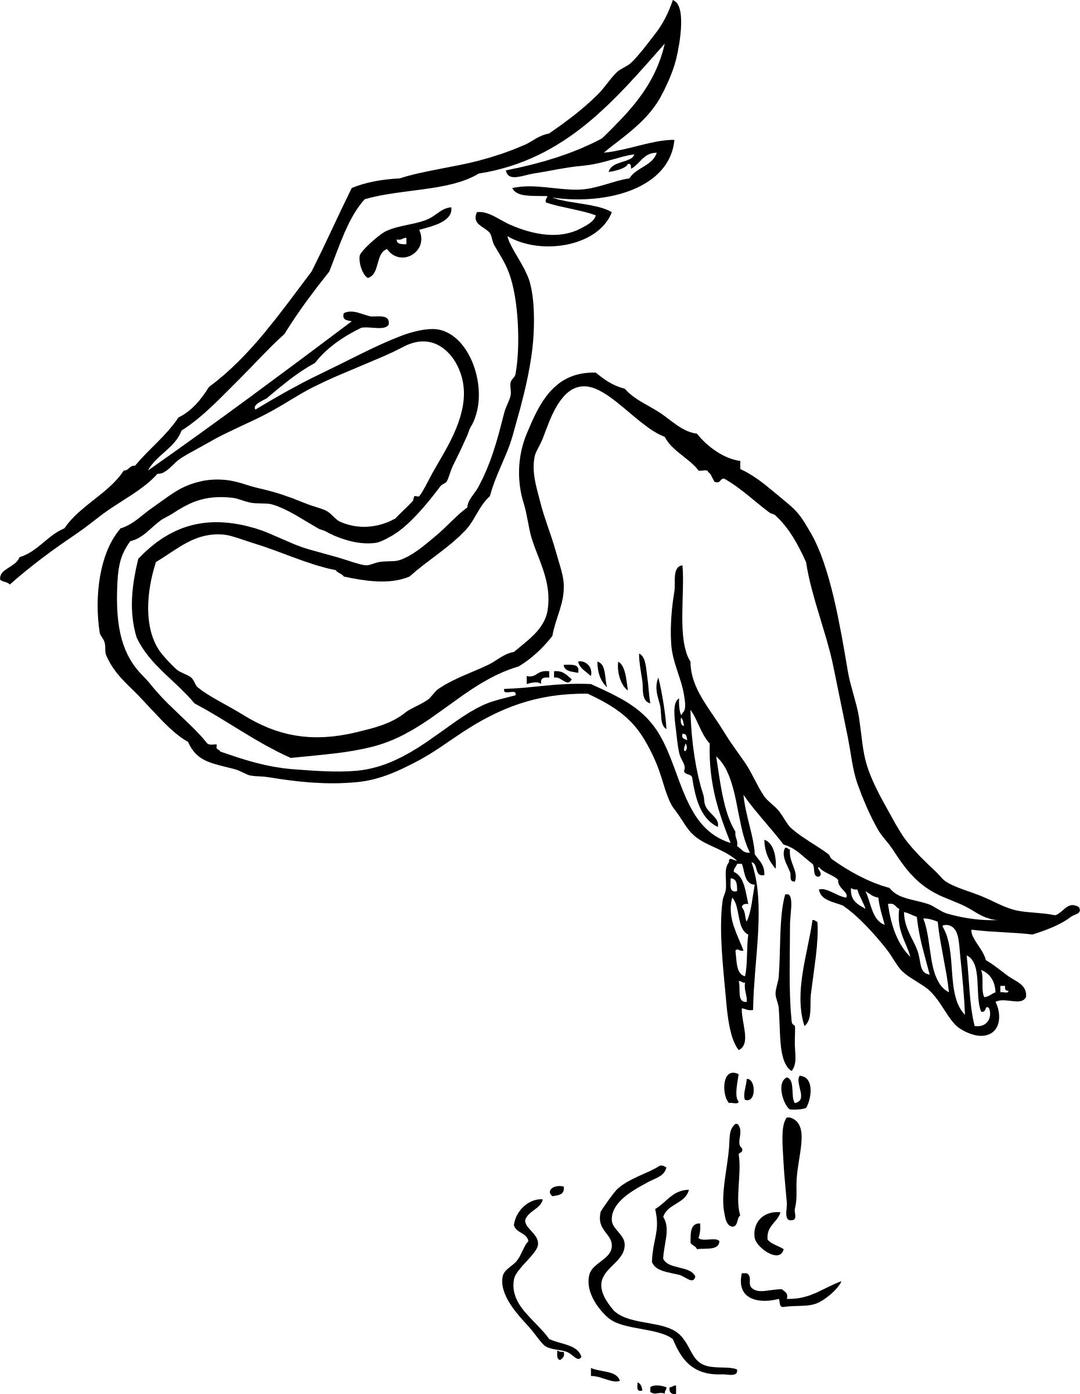 Stork png transparent